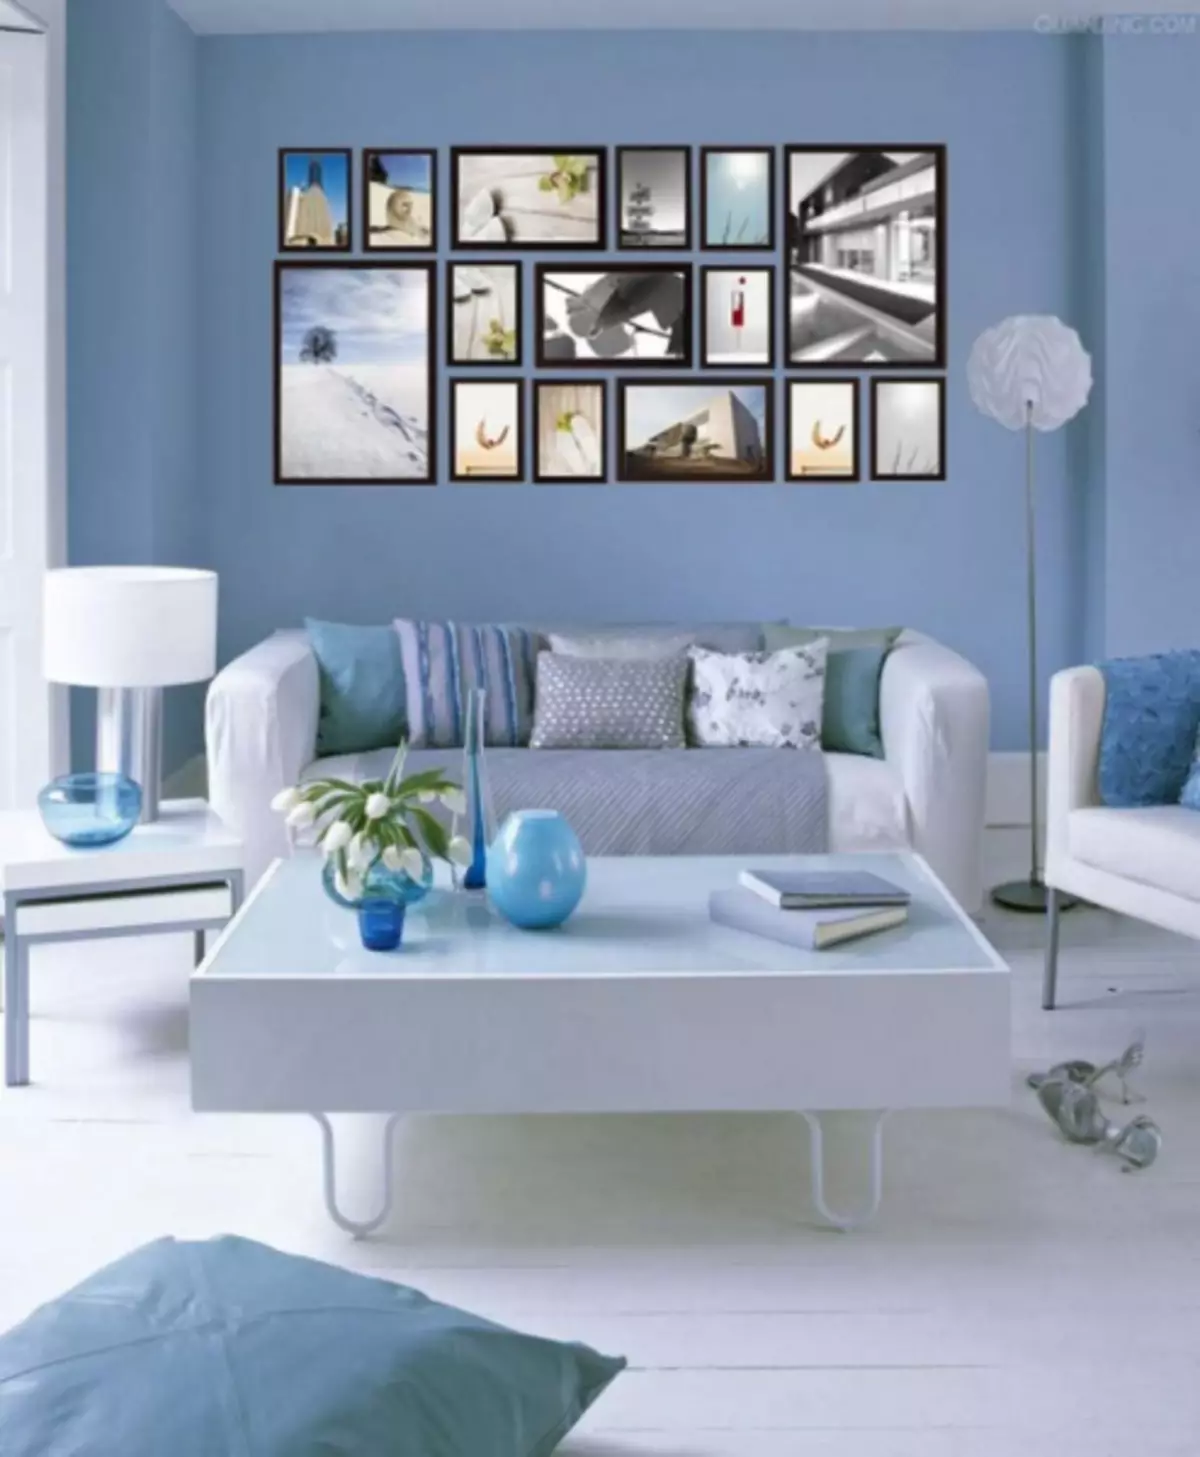 Blue Living Room - 110 mga larawan ng isang hindi pangkaraniwang kumbinasyon ng mga asul na kulay sa living room